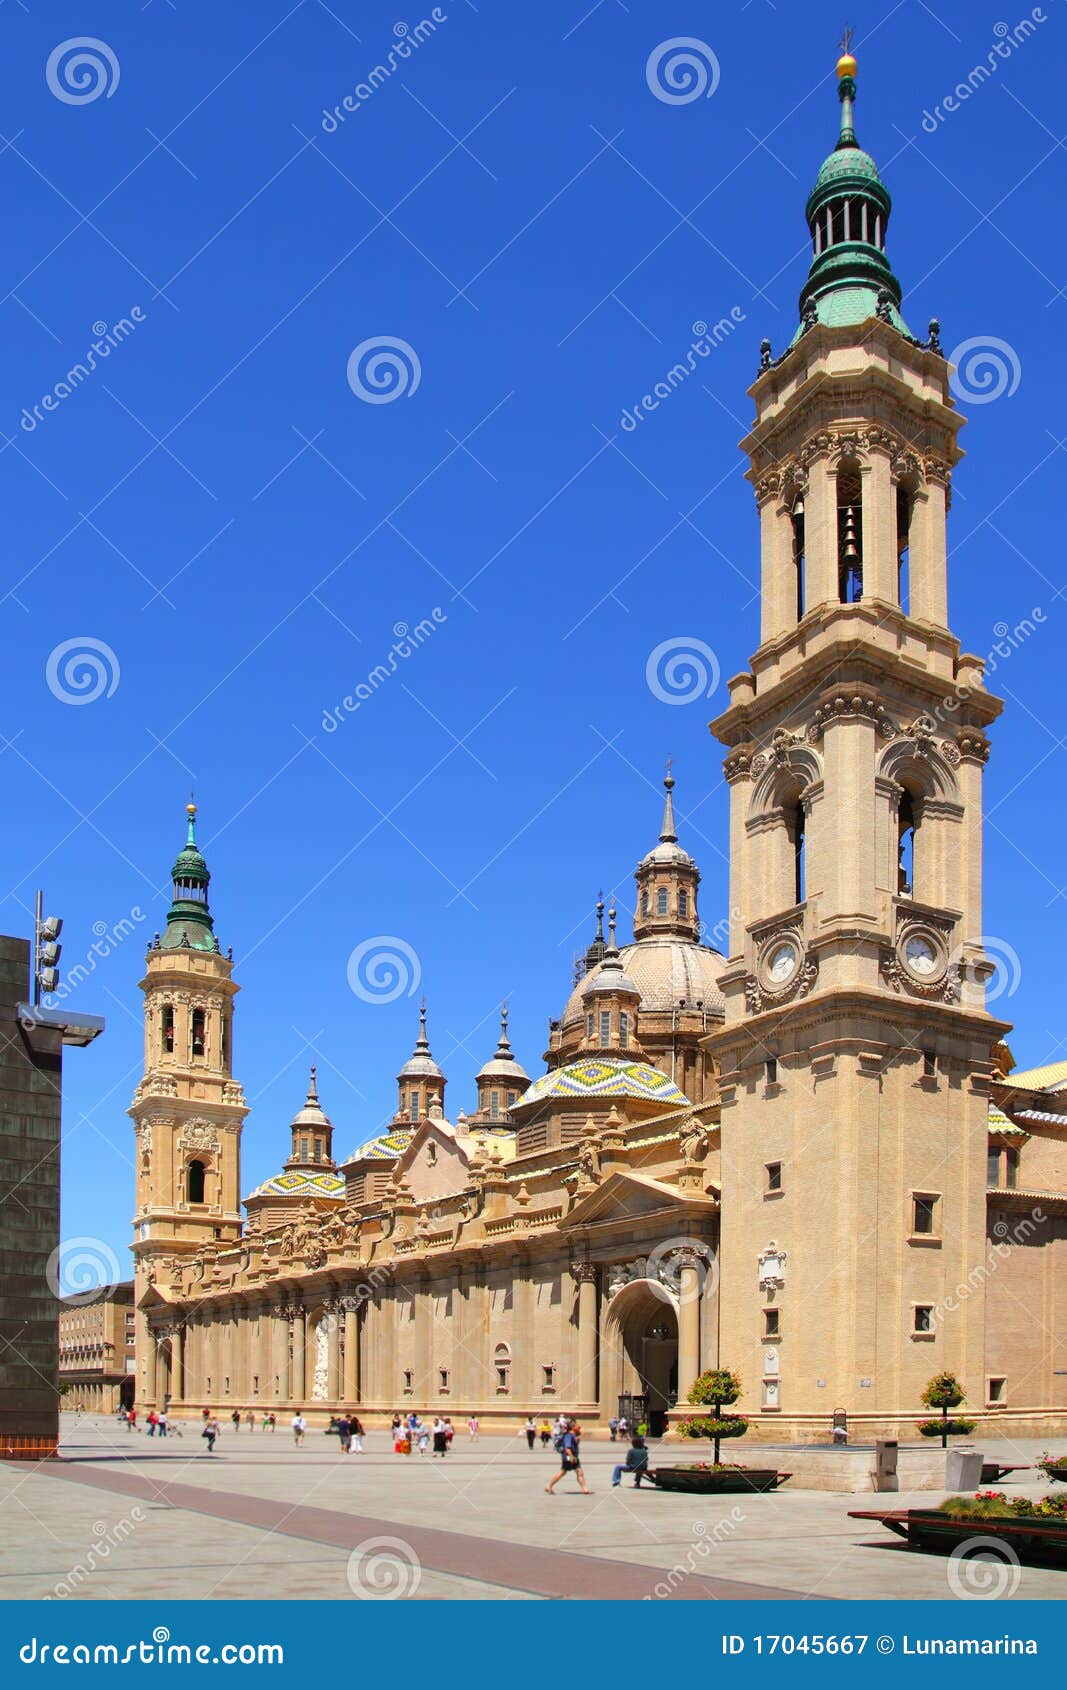 el pilar cathedral in zaragoza city spain outdoor